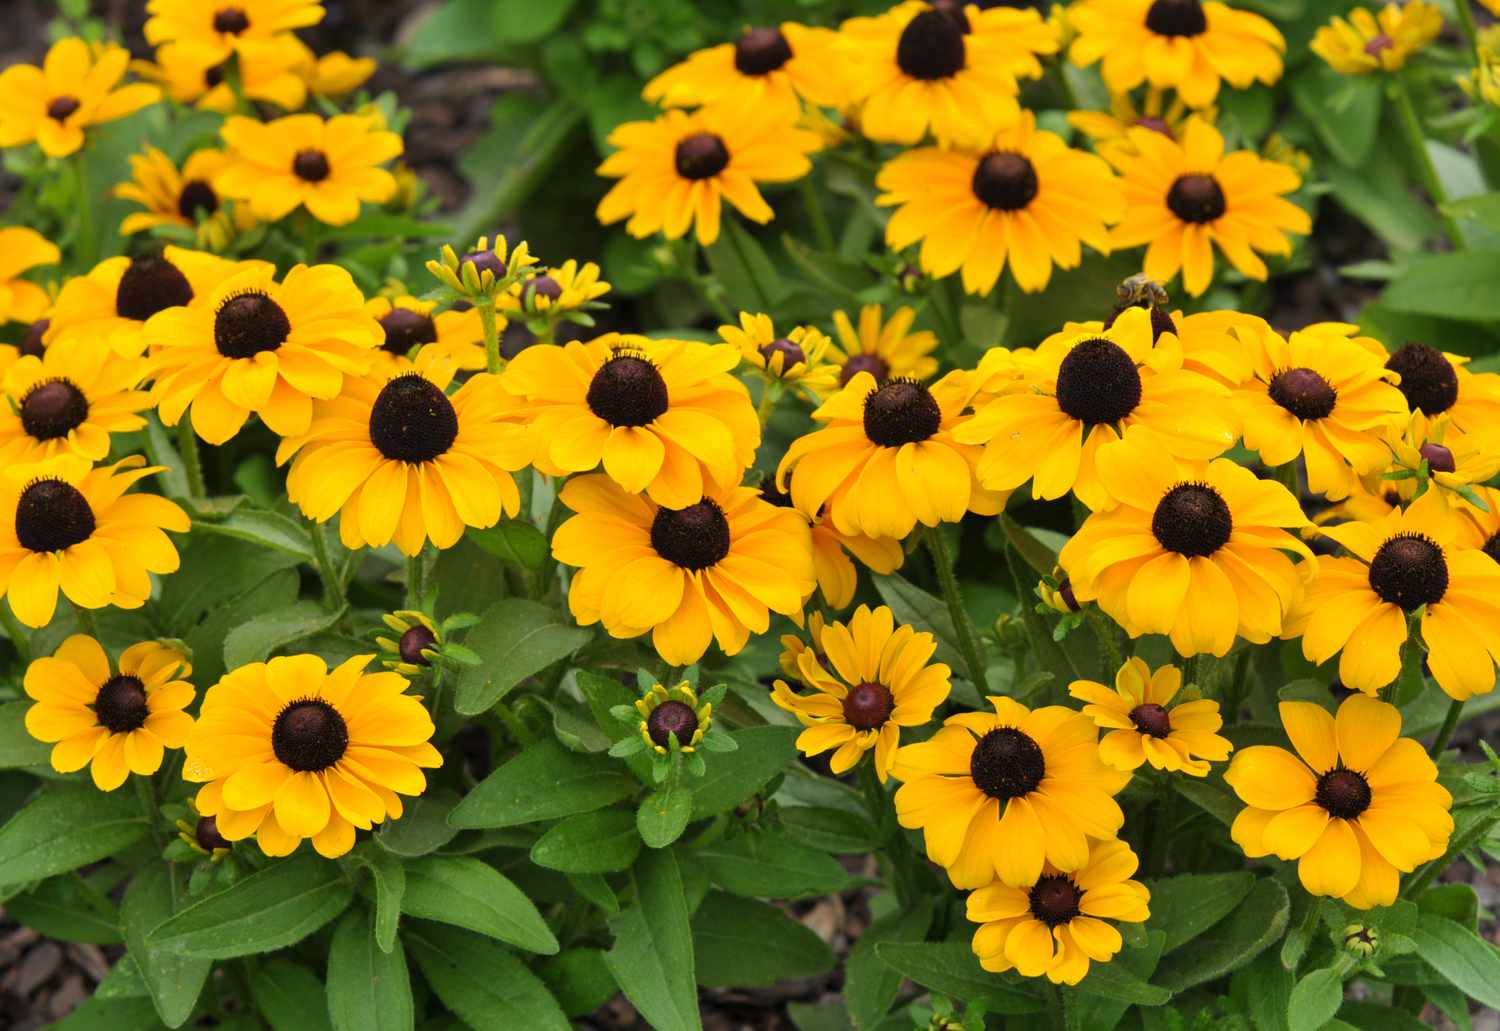 Plantas de susan de ojos negros con pequeñas flores amarillas y capullos